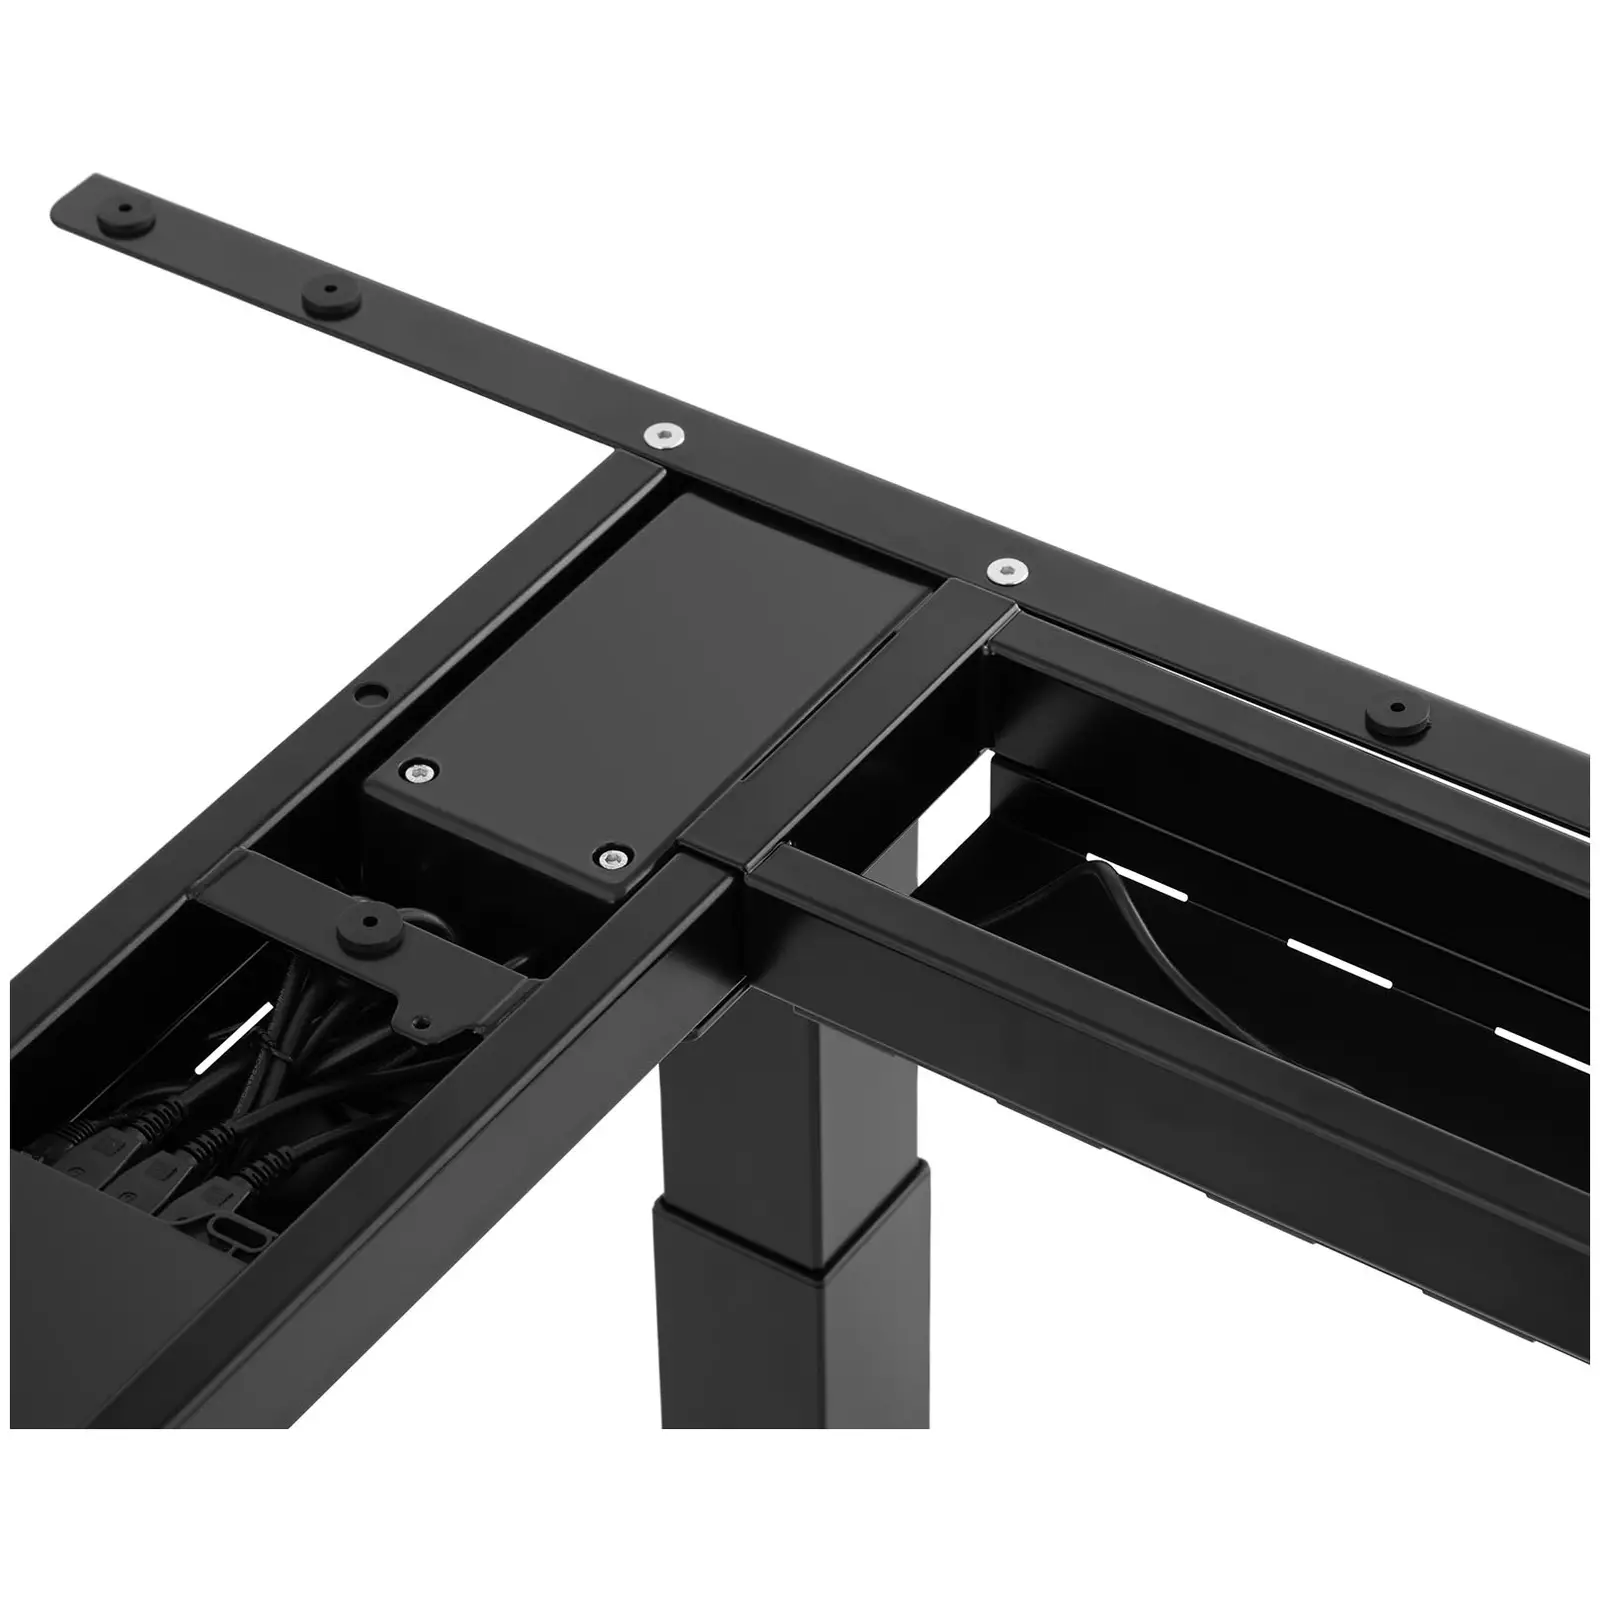 Bastidor para mesa de esquina con ajuste de altura - altura: 58-123 cm - ancho: 90-150 cm (izquierda) / 110-190 cm (derecha) - ángulo: 90° - 150 kg